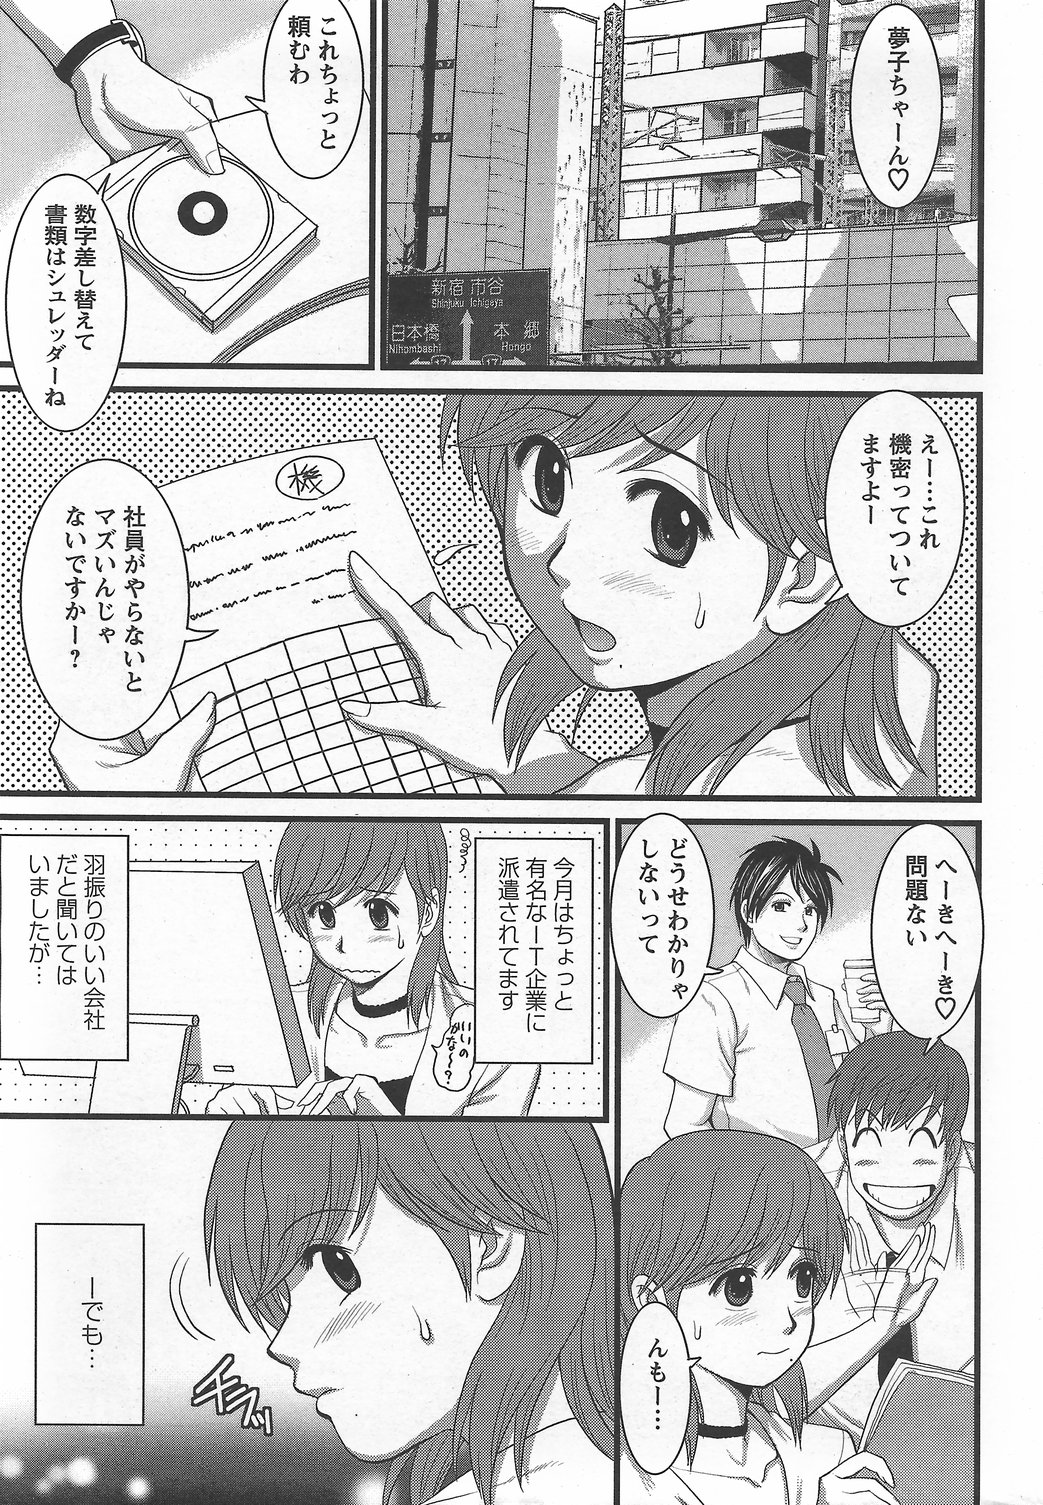 Haken no Muuko-san 6 [Saigado] page 6 full